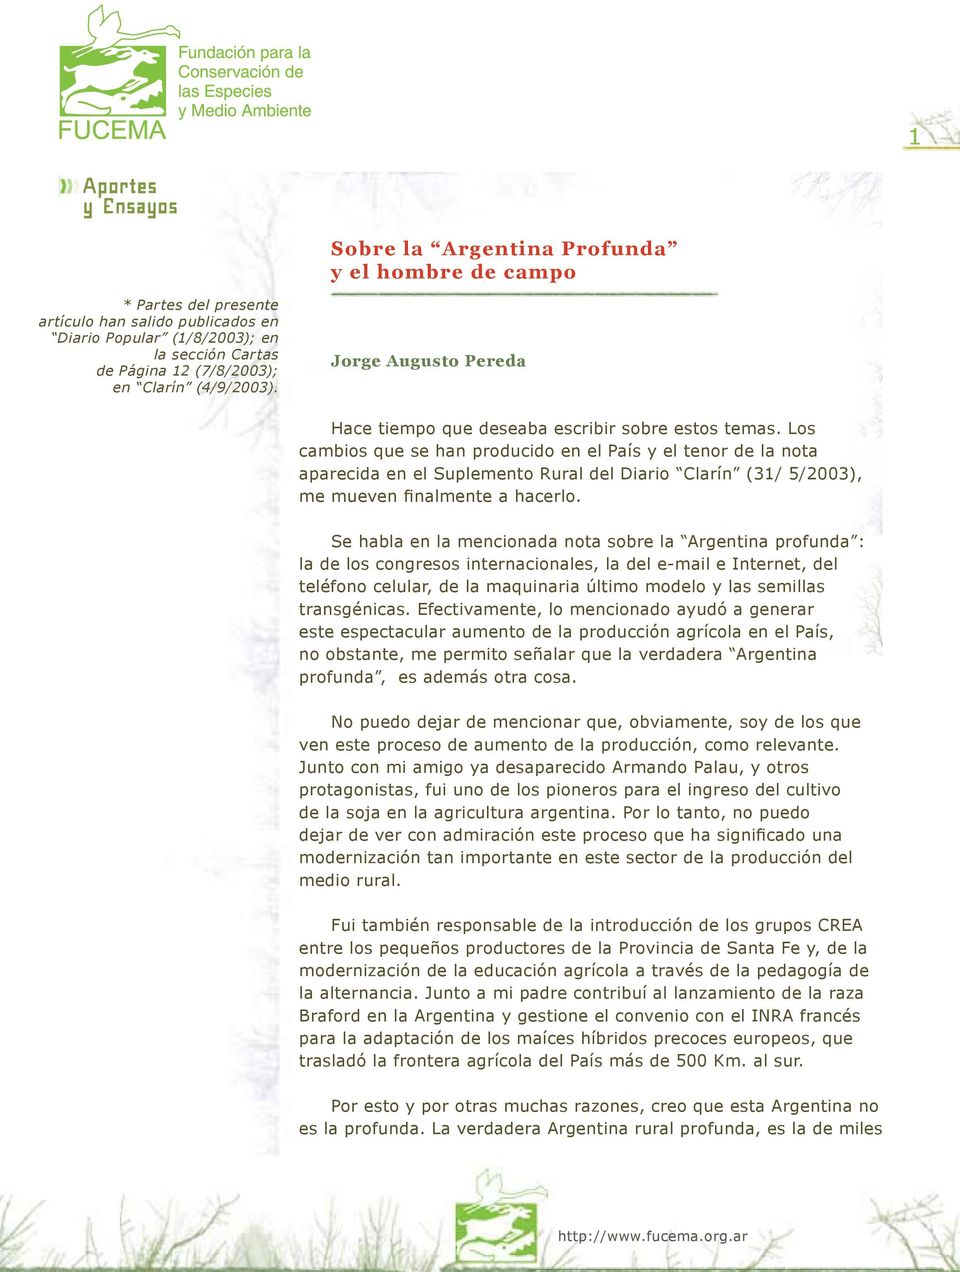 Los cambios que se han producido en el País y el tenor de la nota aparecida en el Suplemento Rural del Diario Clarín (31/ 5/2003), me mueven finalmente a hacerlo.